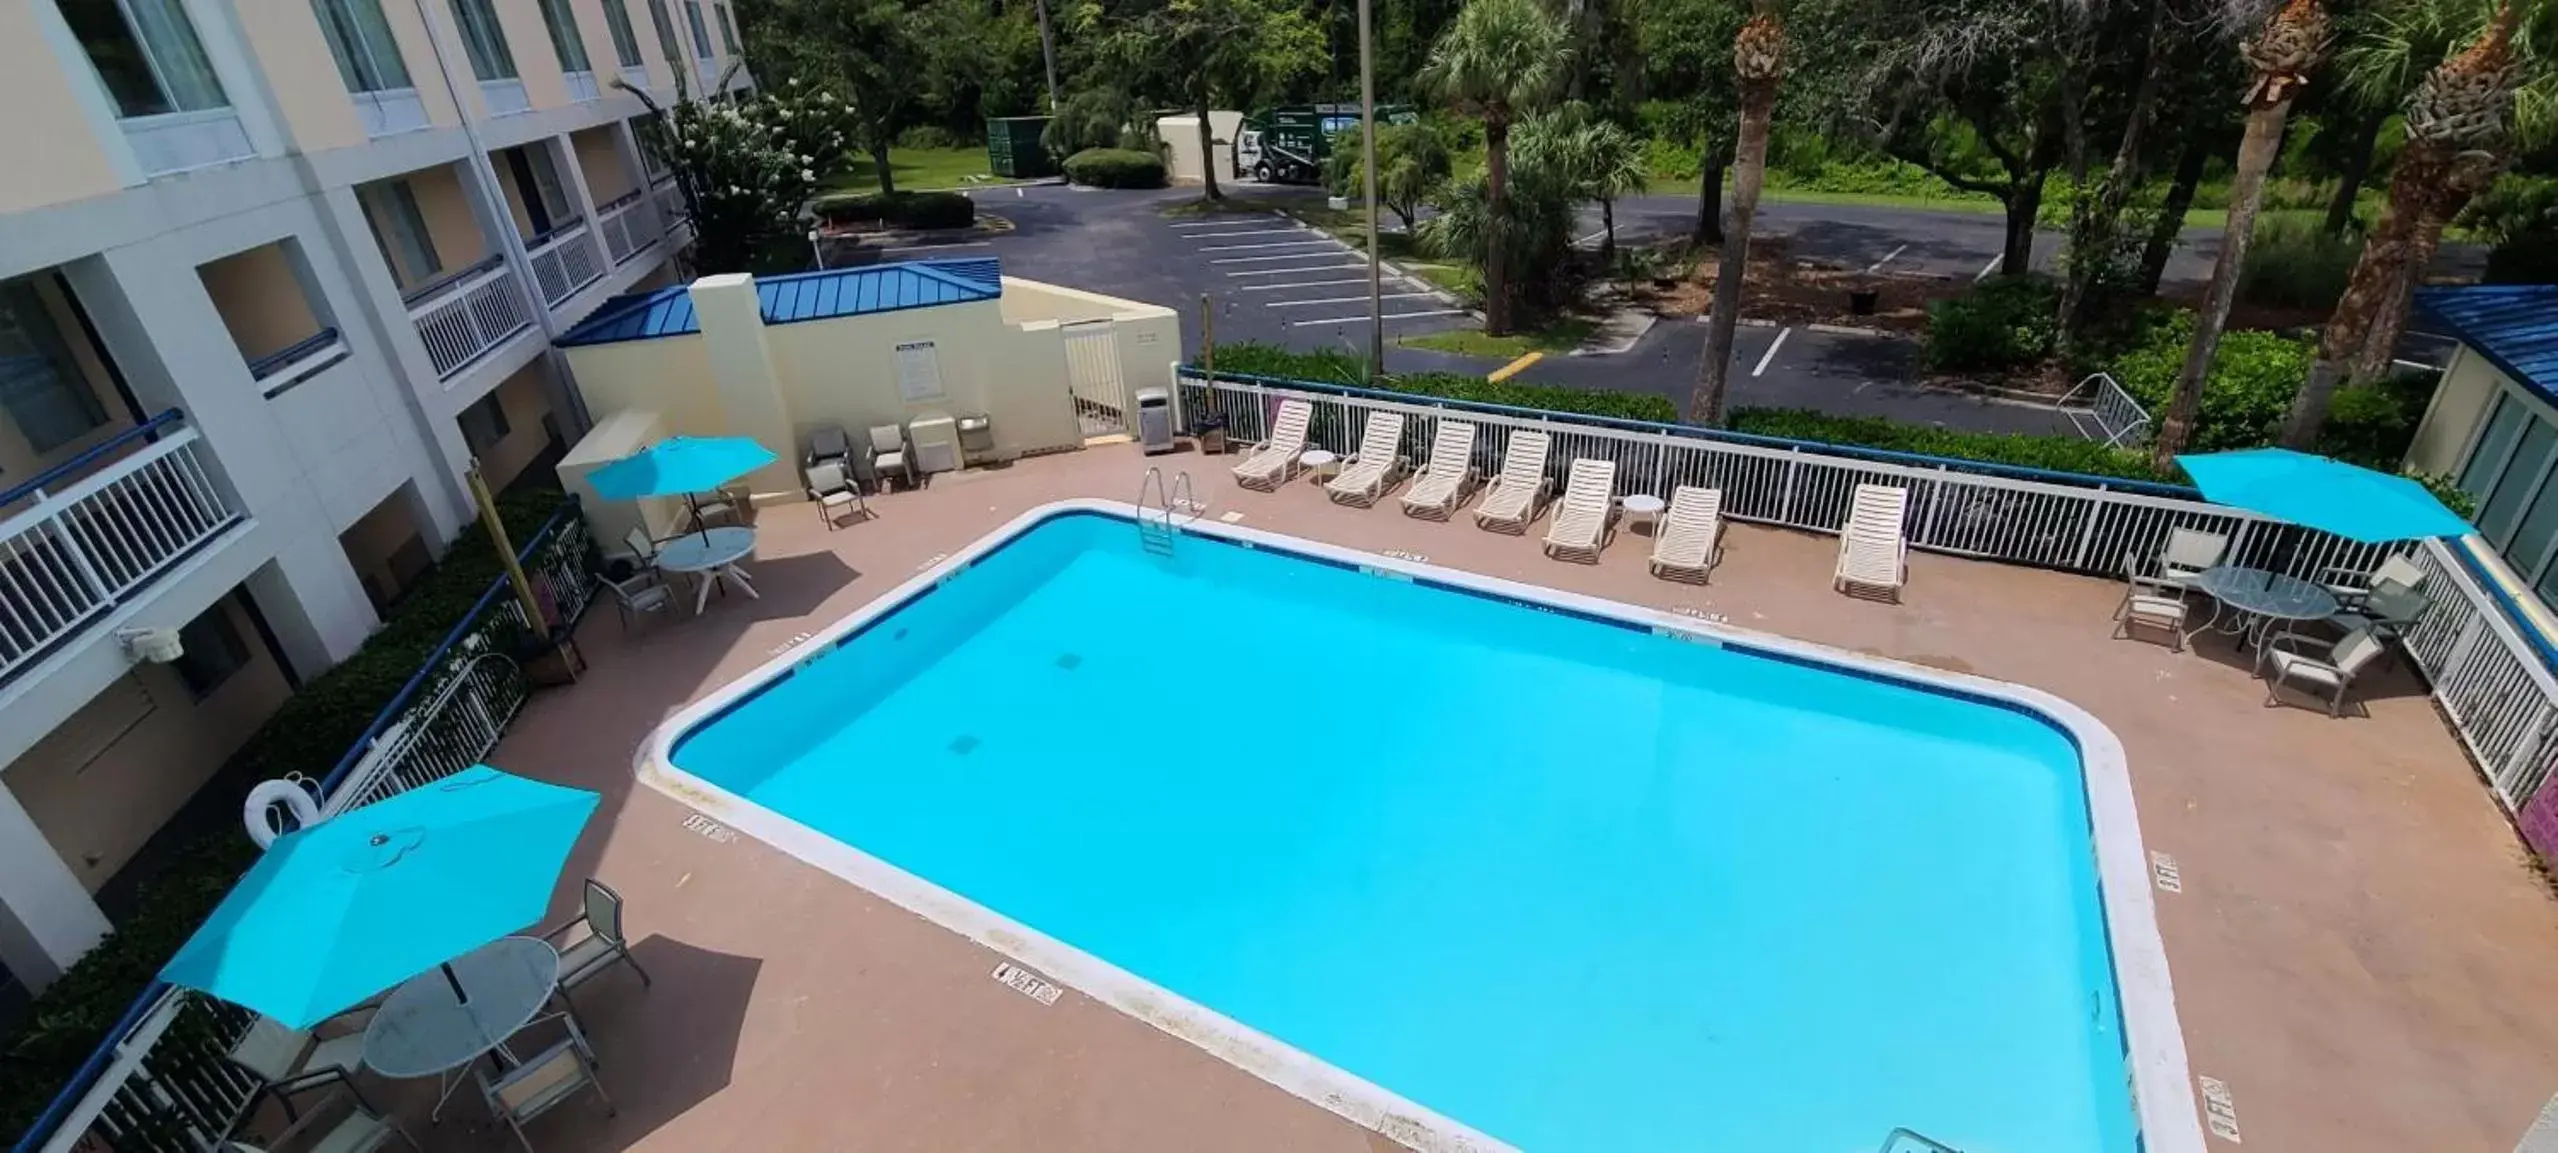 Pool View in Hotel Carolina A Days Inn by Wyndham